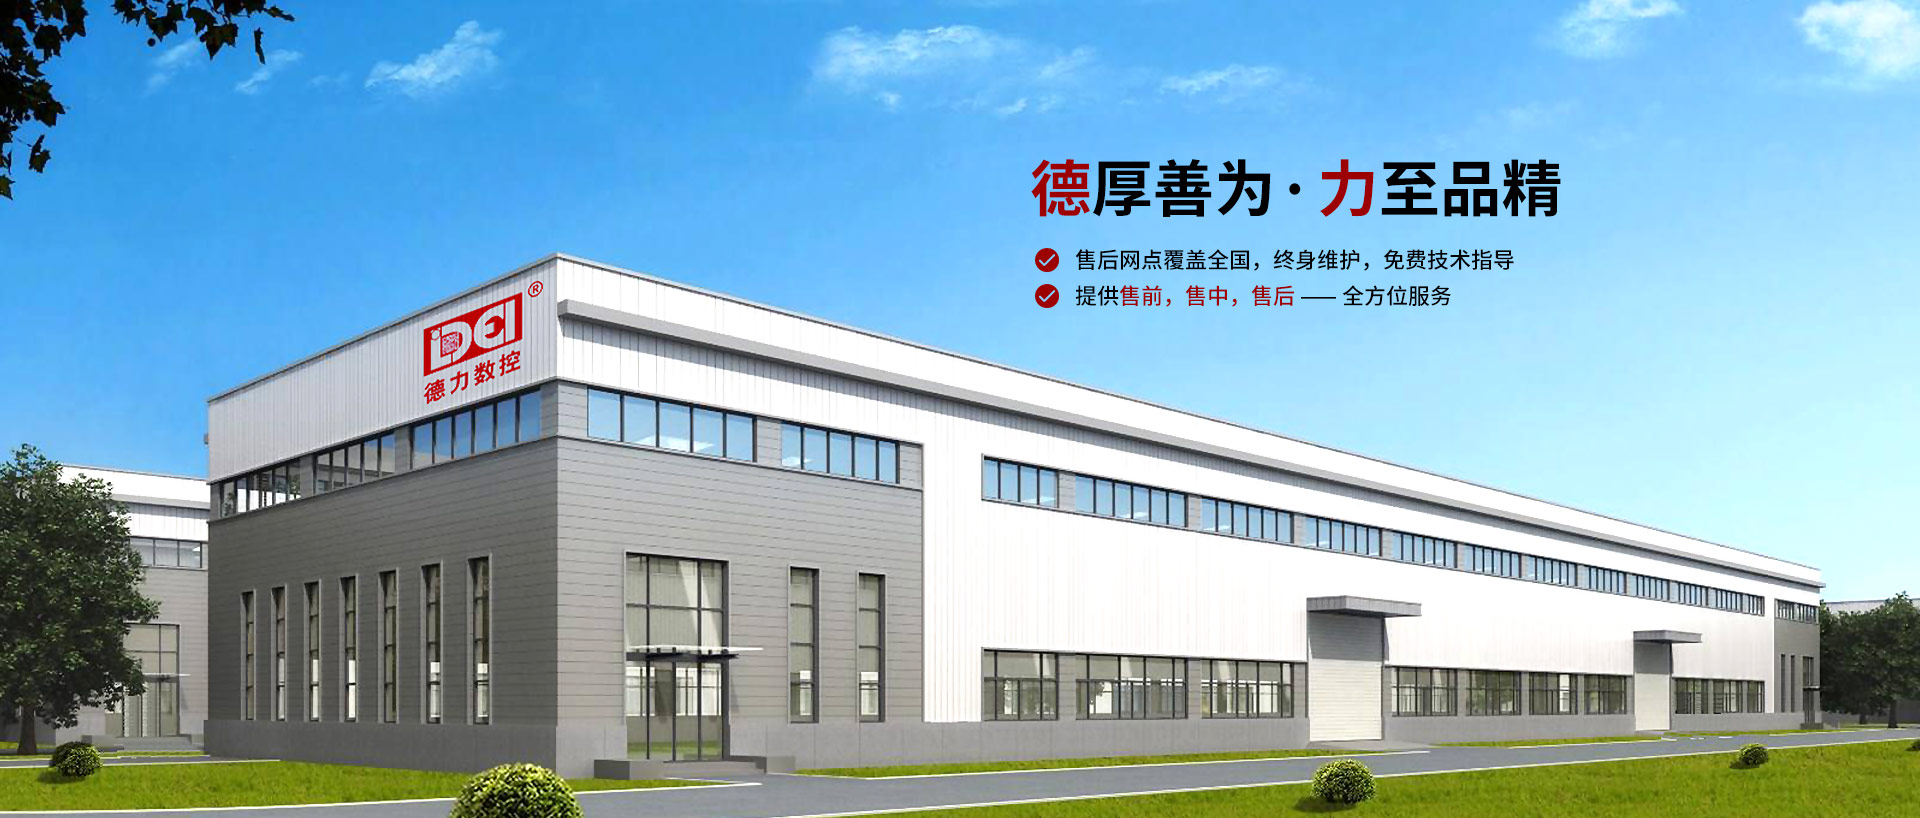 德力数控专注铝型材数控加工中心研发、生产、销售